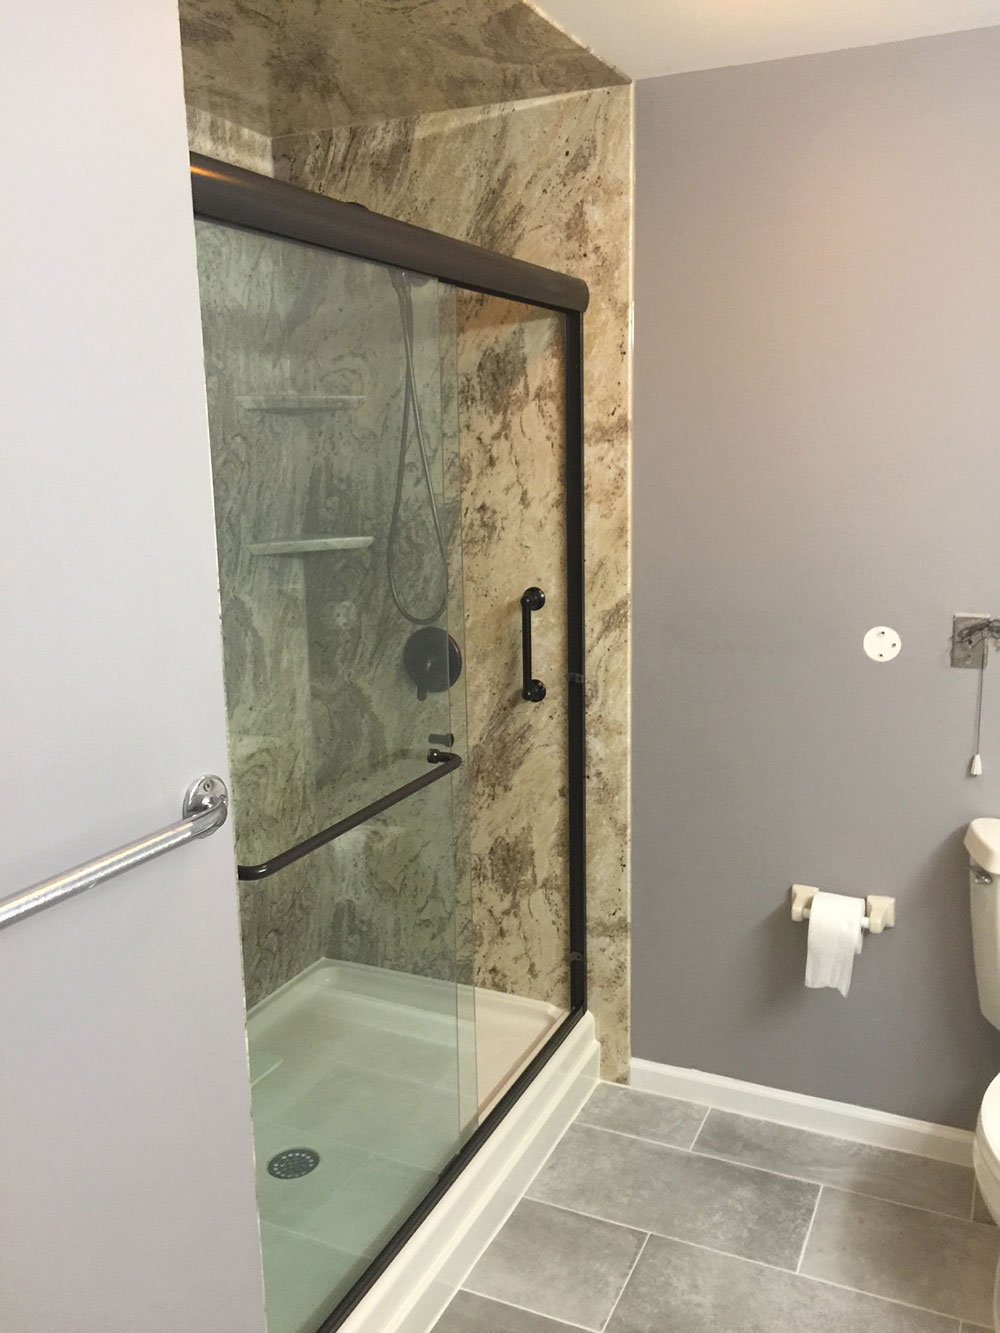 Bathroom Shower Door